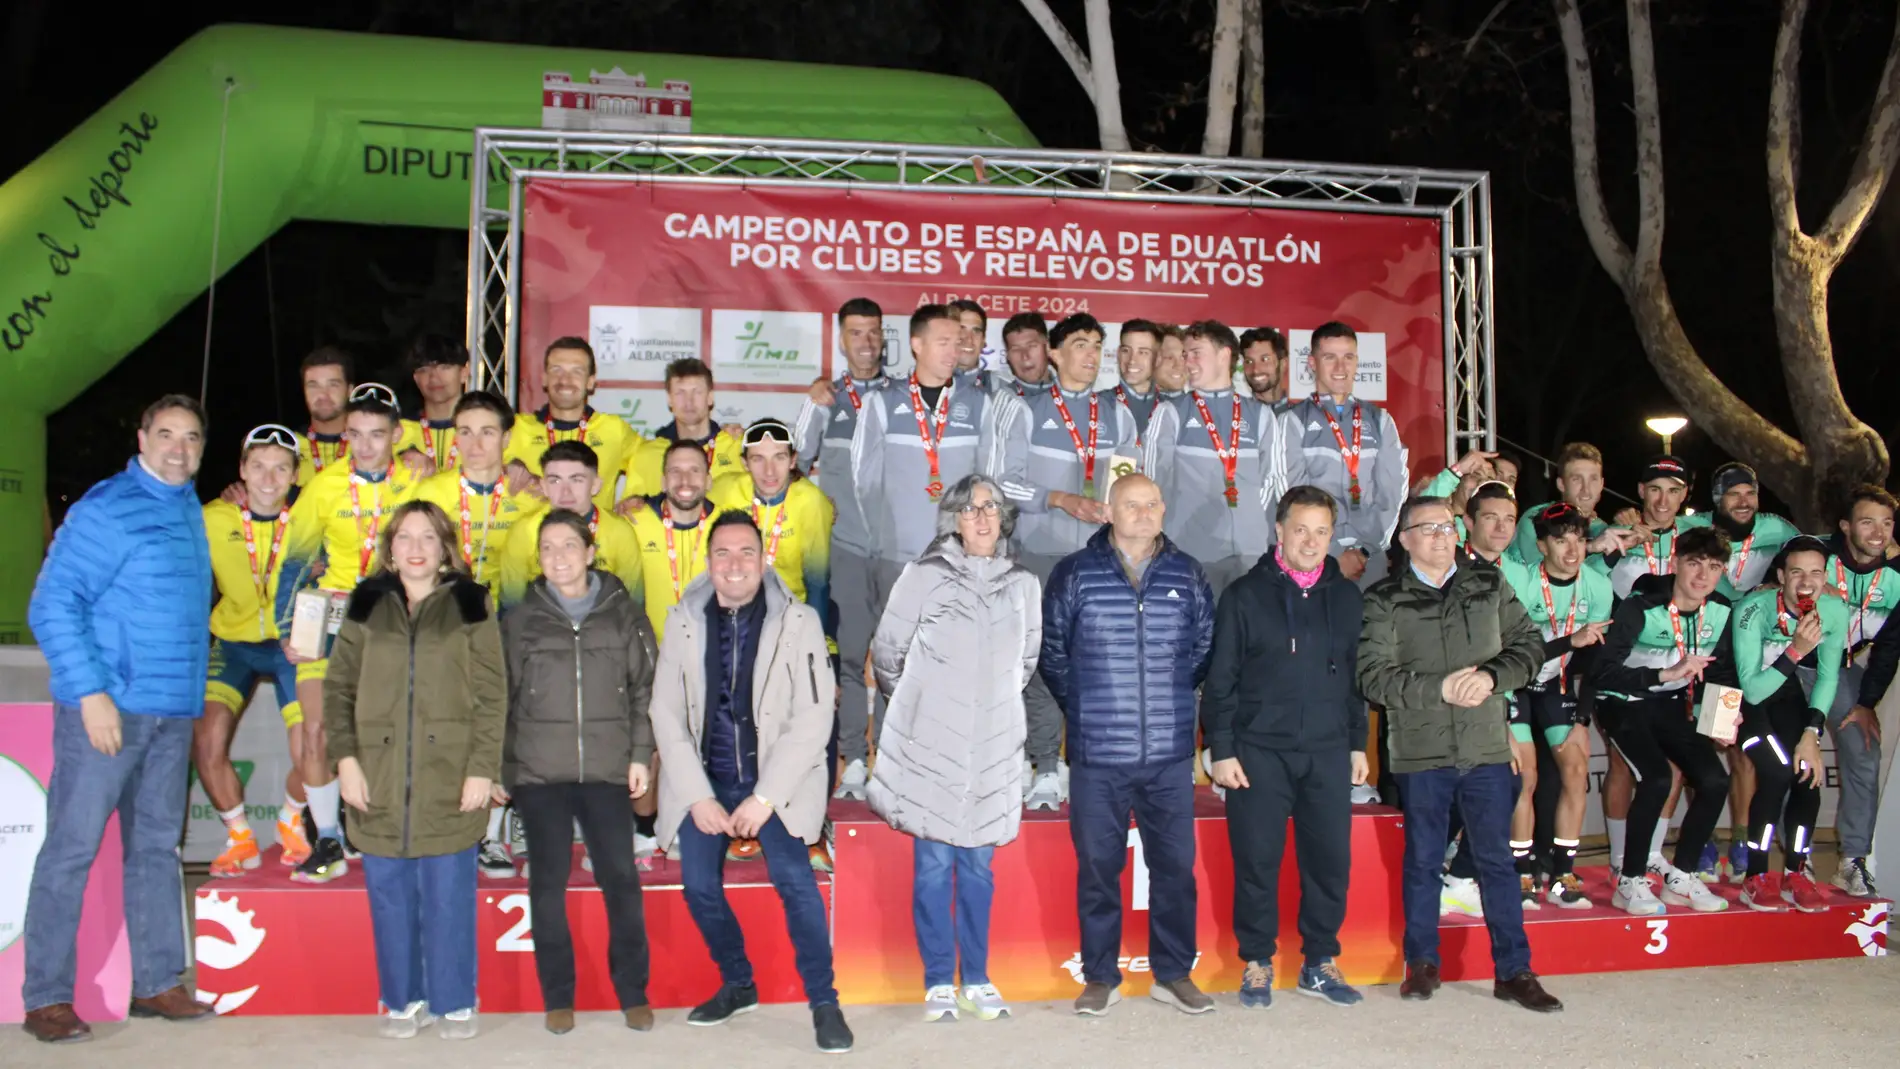 El Campeonato de España de Duatlón dejó en Albacete cerca de 600.000 euros 